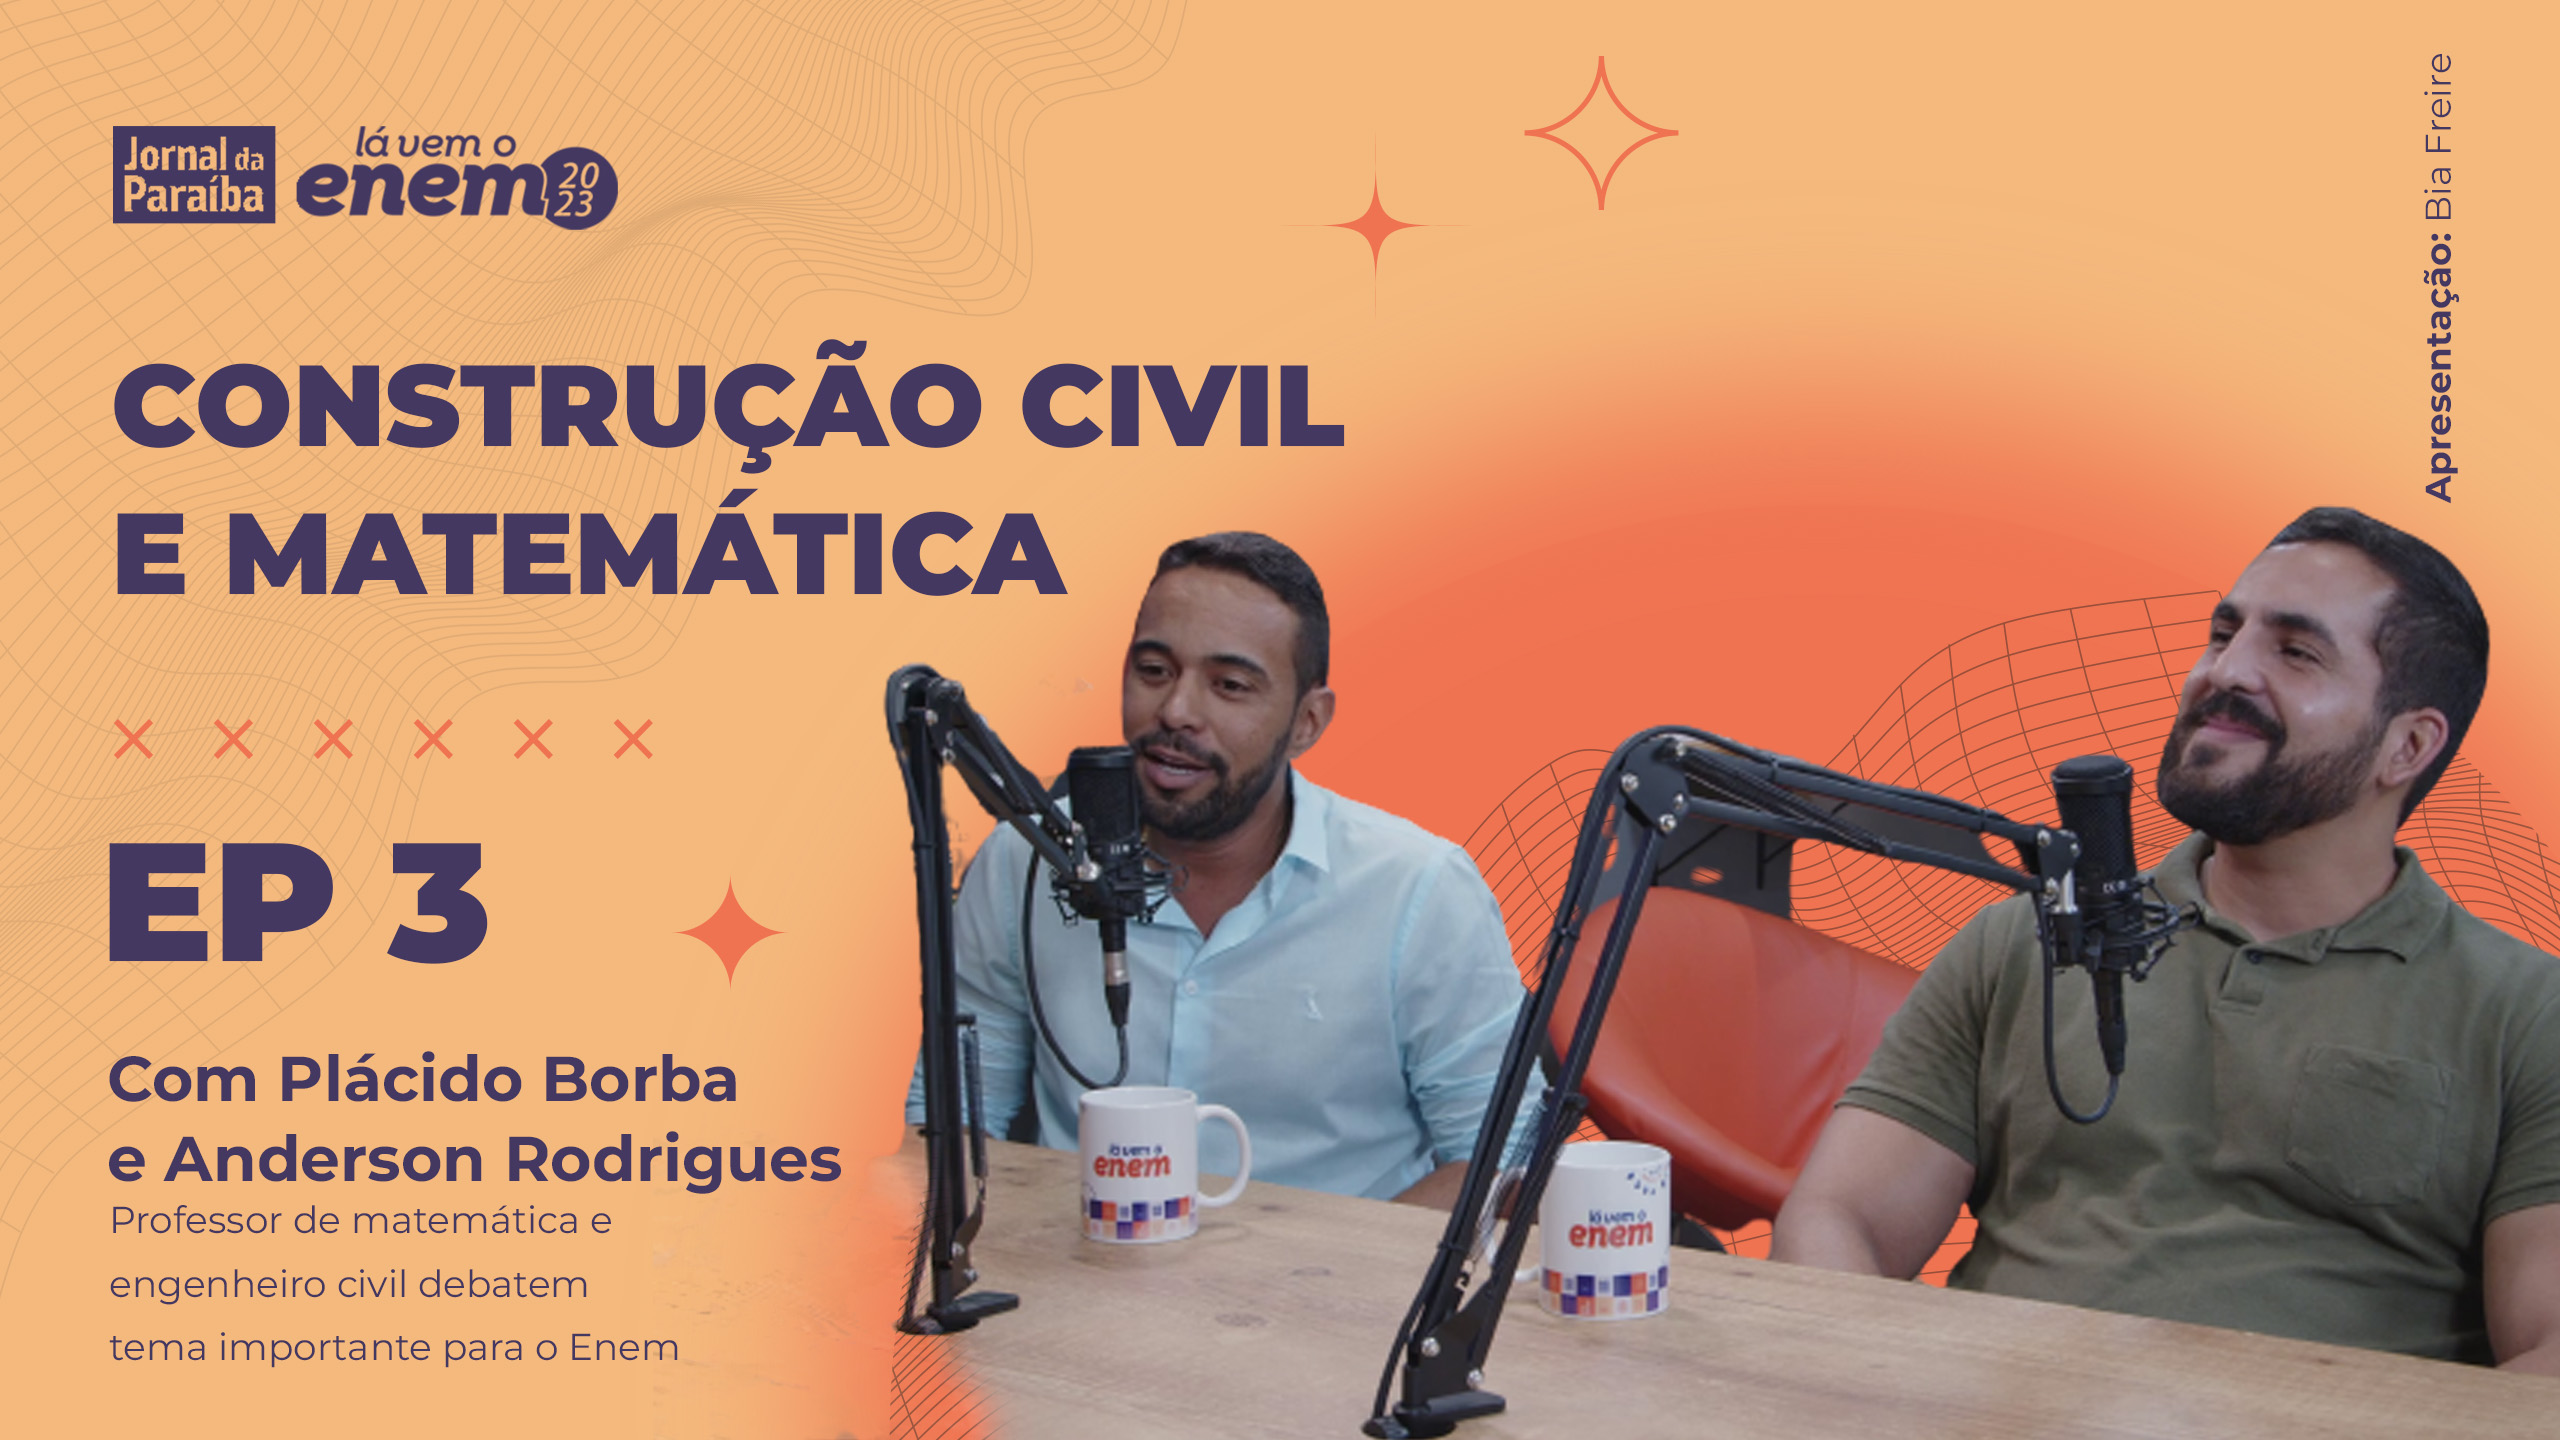 Videocast sobre construção civil e matemática convidou o professor de matemática Plácido Borba e o engenheiro civil Anderson Rodrigues.